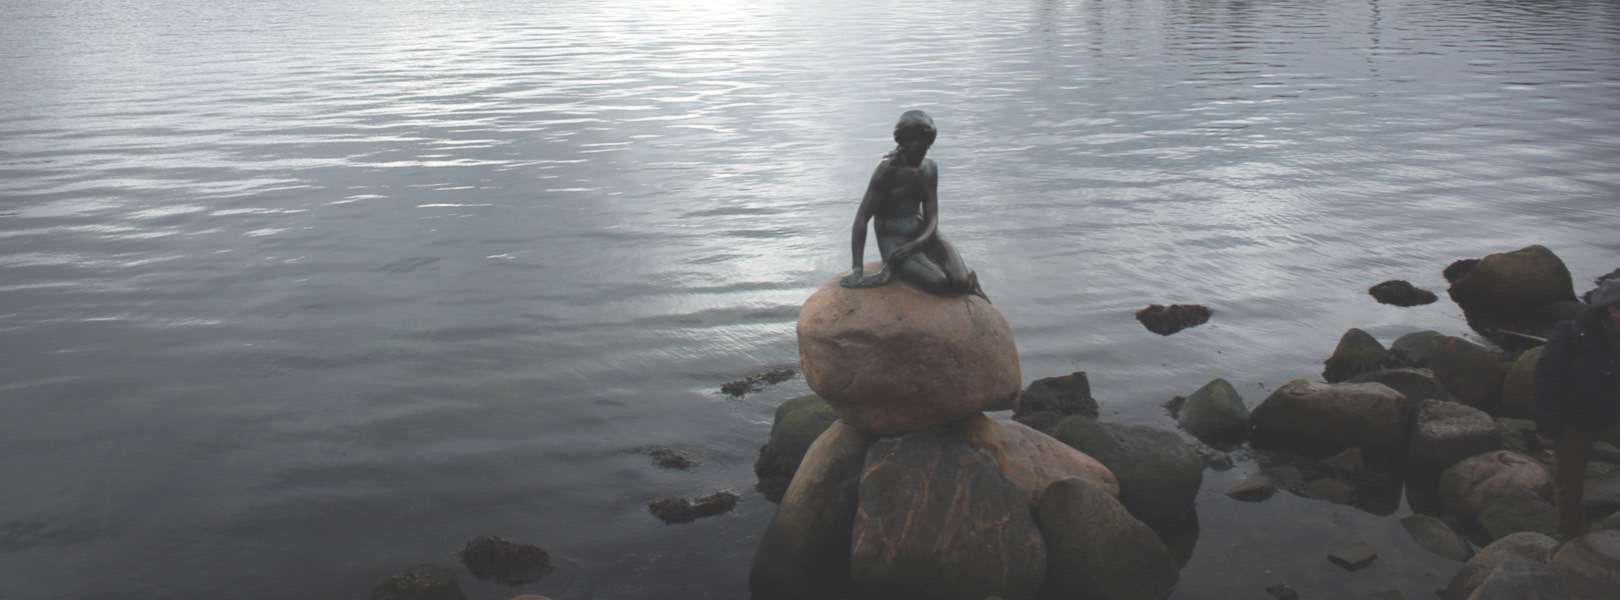 Die kleine Meerjungfrau ist das Wahrzeichen von Kopenhagen